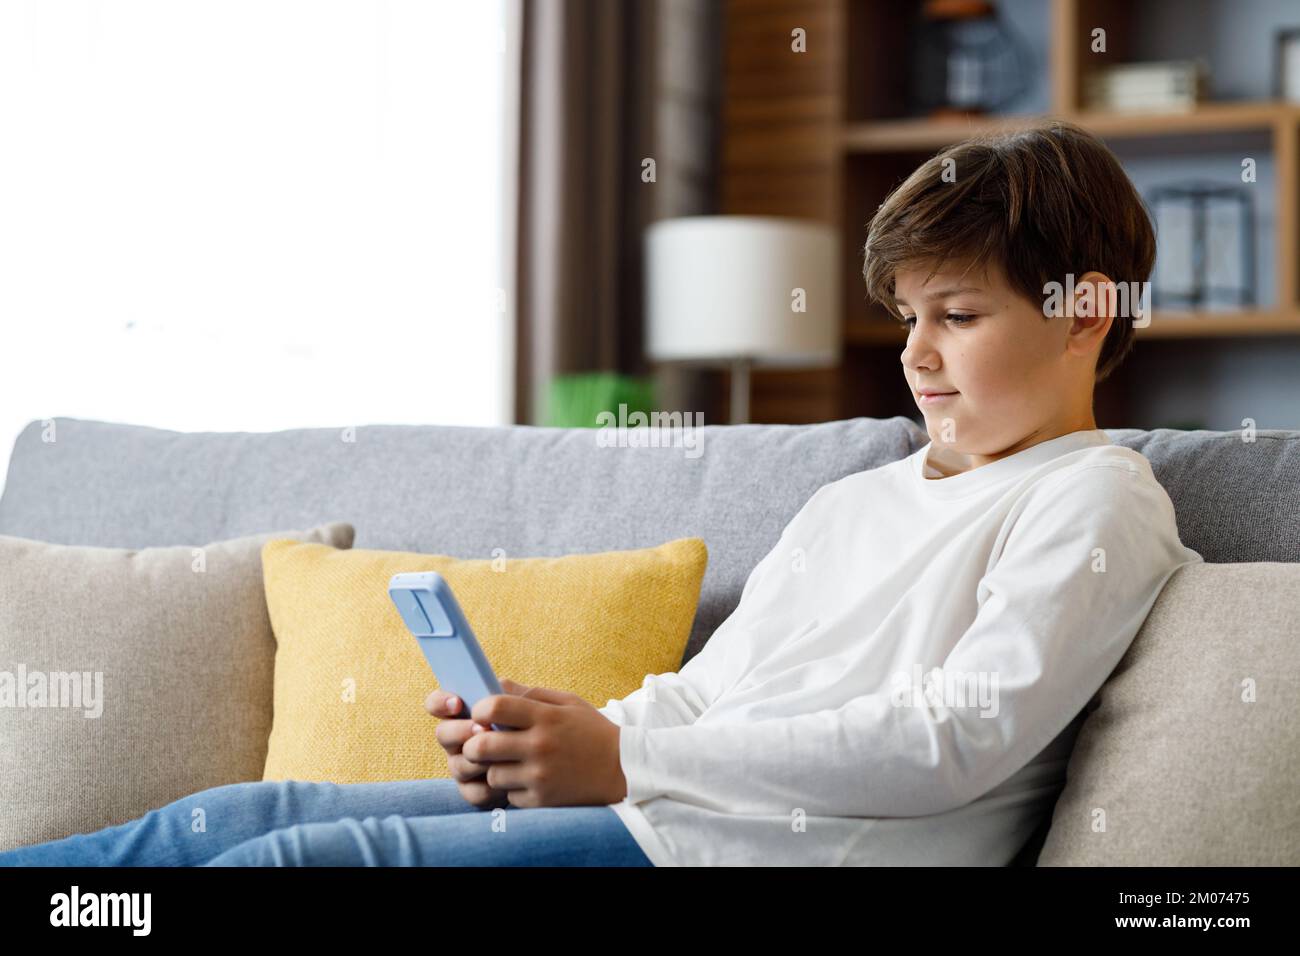 Portrait eines jungen niedlichen Jungen, der das Smartphone auf dem Sofa hält. Teenager zu Hause wählen Lieblingsmusik, SMS-Nachrichten, Surfen im Internet, beobachten Stockfoto